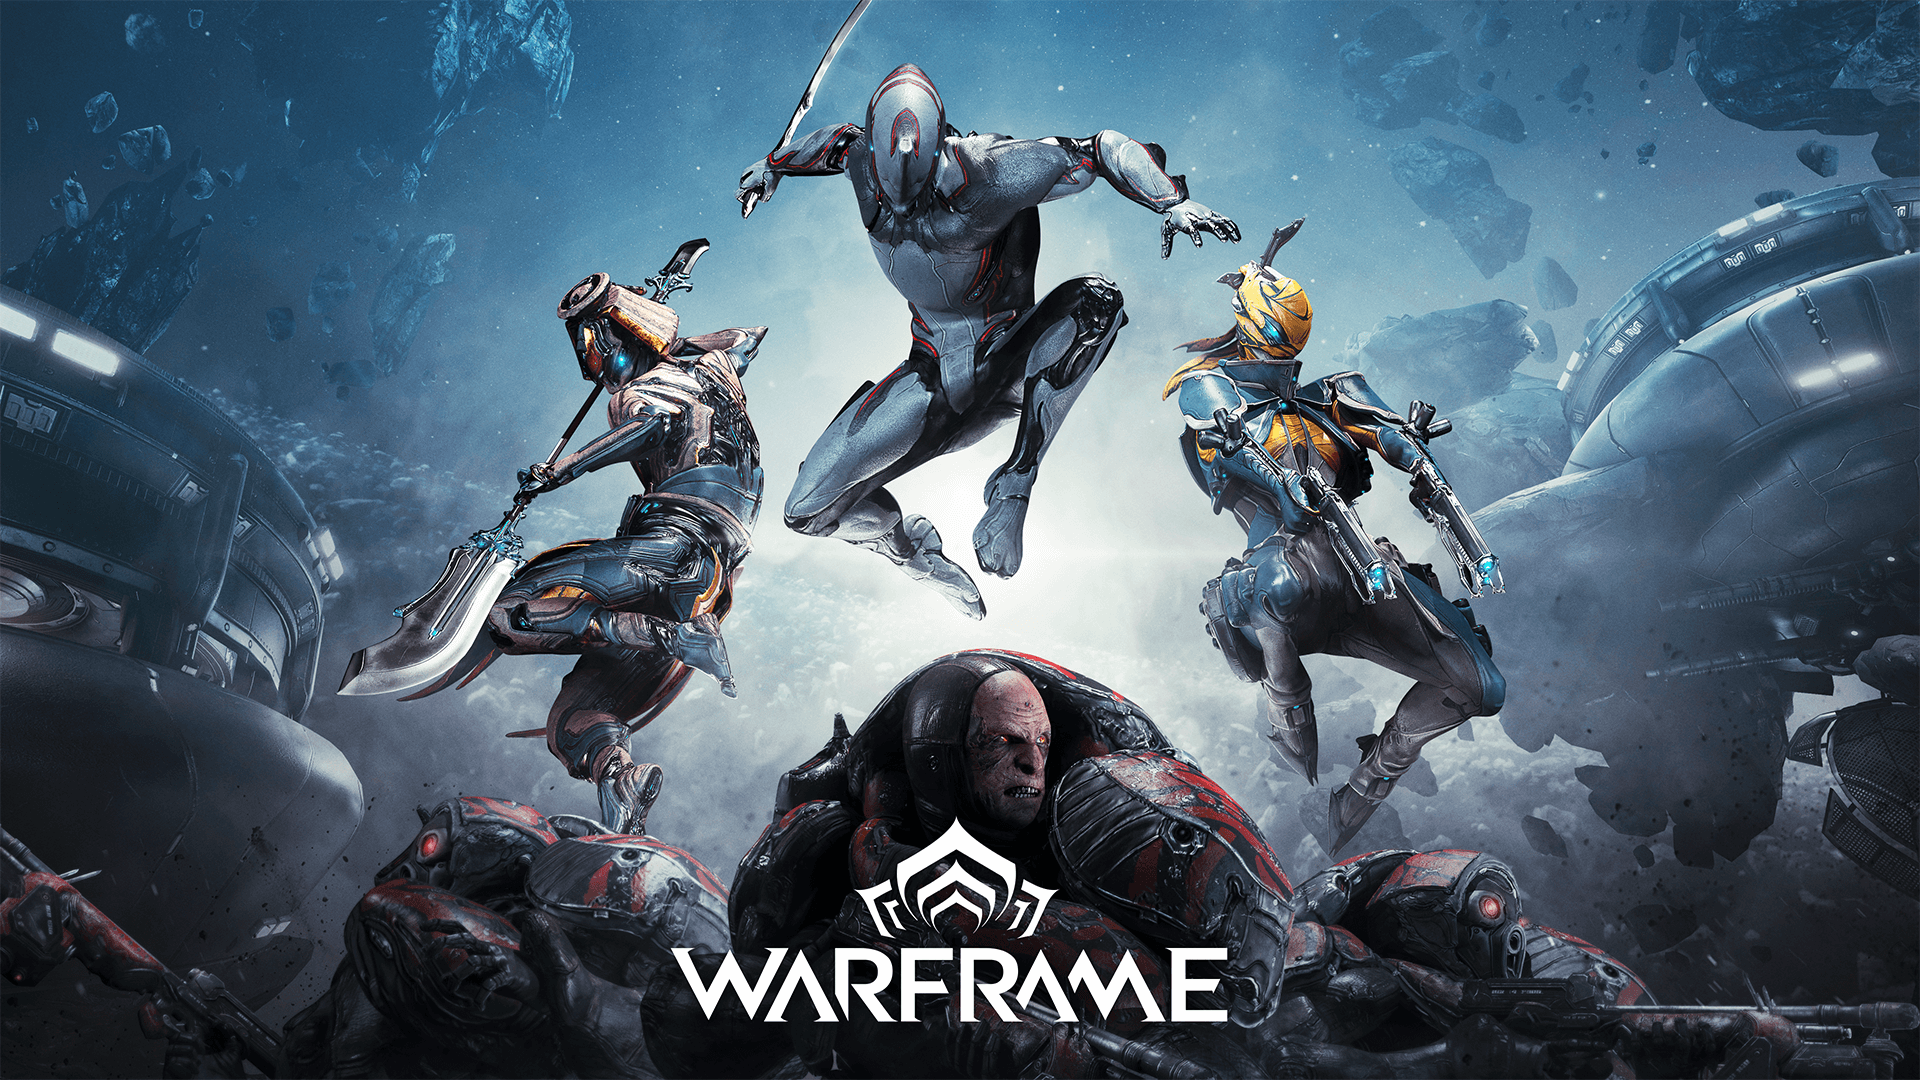 Det populära tredjepersonsskjutspelet Warframe har släppts på iOS, och spelet kommer att släppas på Android inom en snar framtid